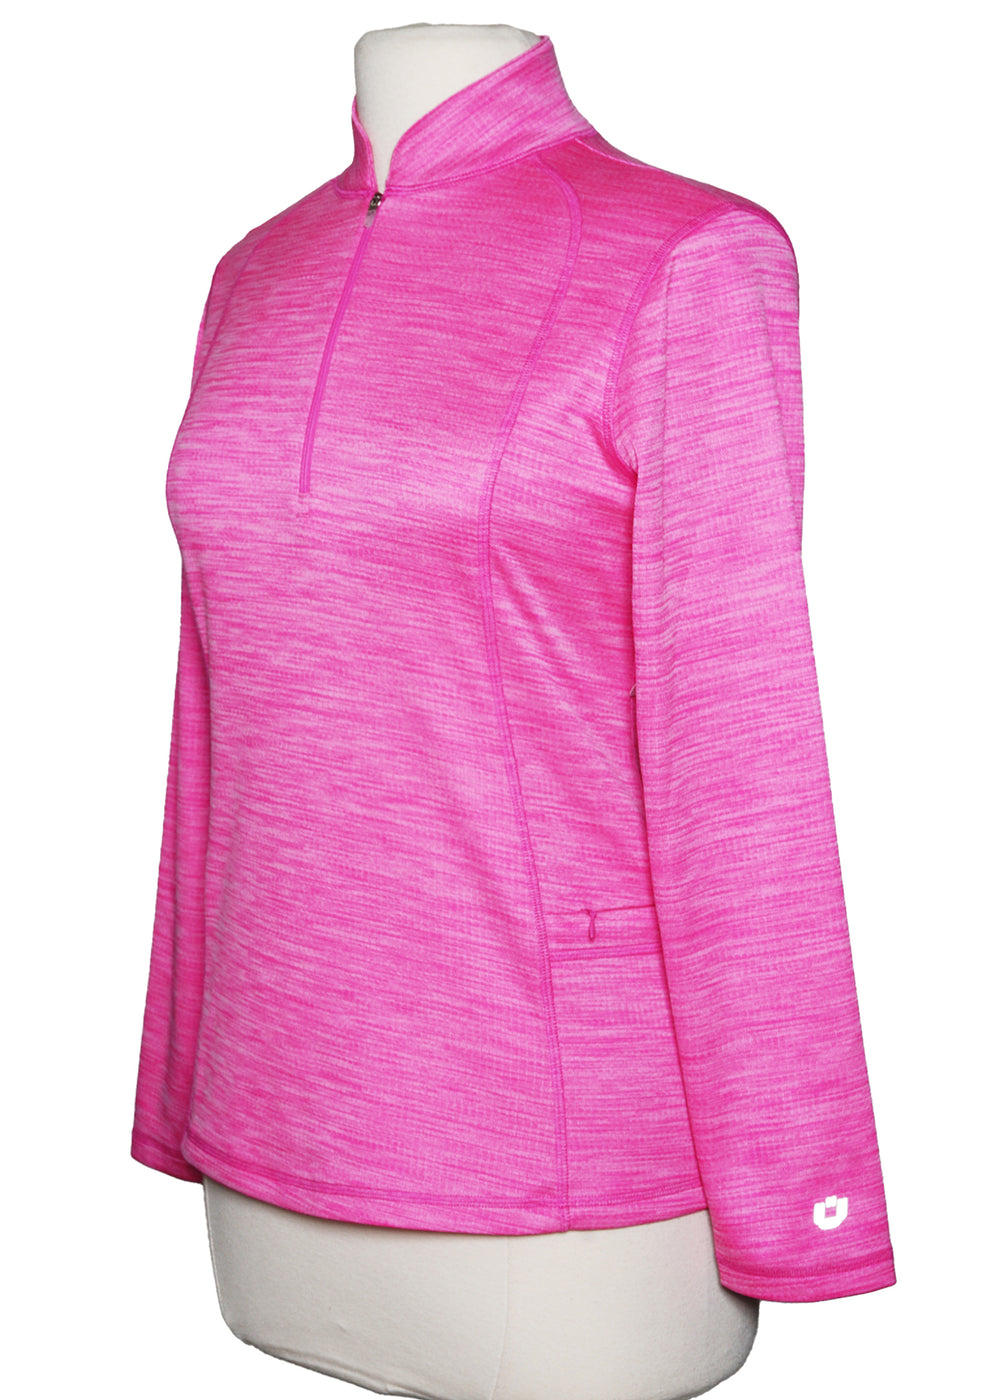 IBKUL Space Dye Pullover - Hot Pink - Skorzie